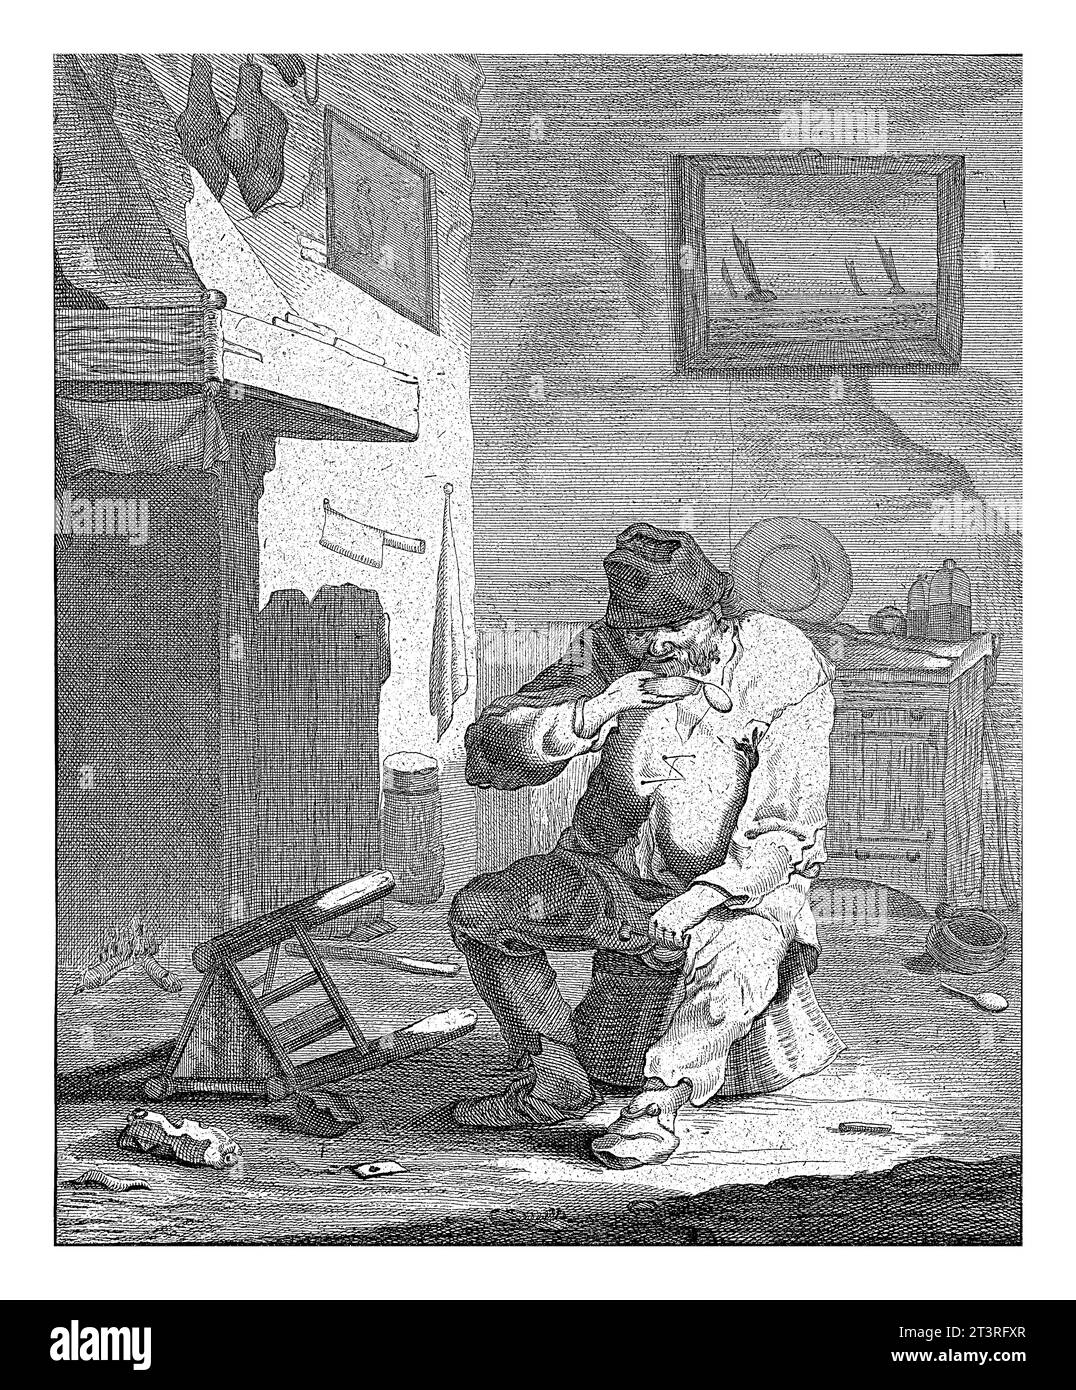 Der Geruch: Mann mit Schnupfkiste, Abraham de Blois, nach Andries beide, 1679–1717 Ein zerlumpter Mann sitzt auf einem Stuhl in einem Innenraum und riecht eine Kiste sn Stockfoto